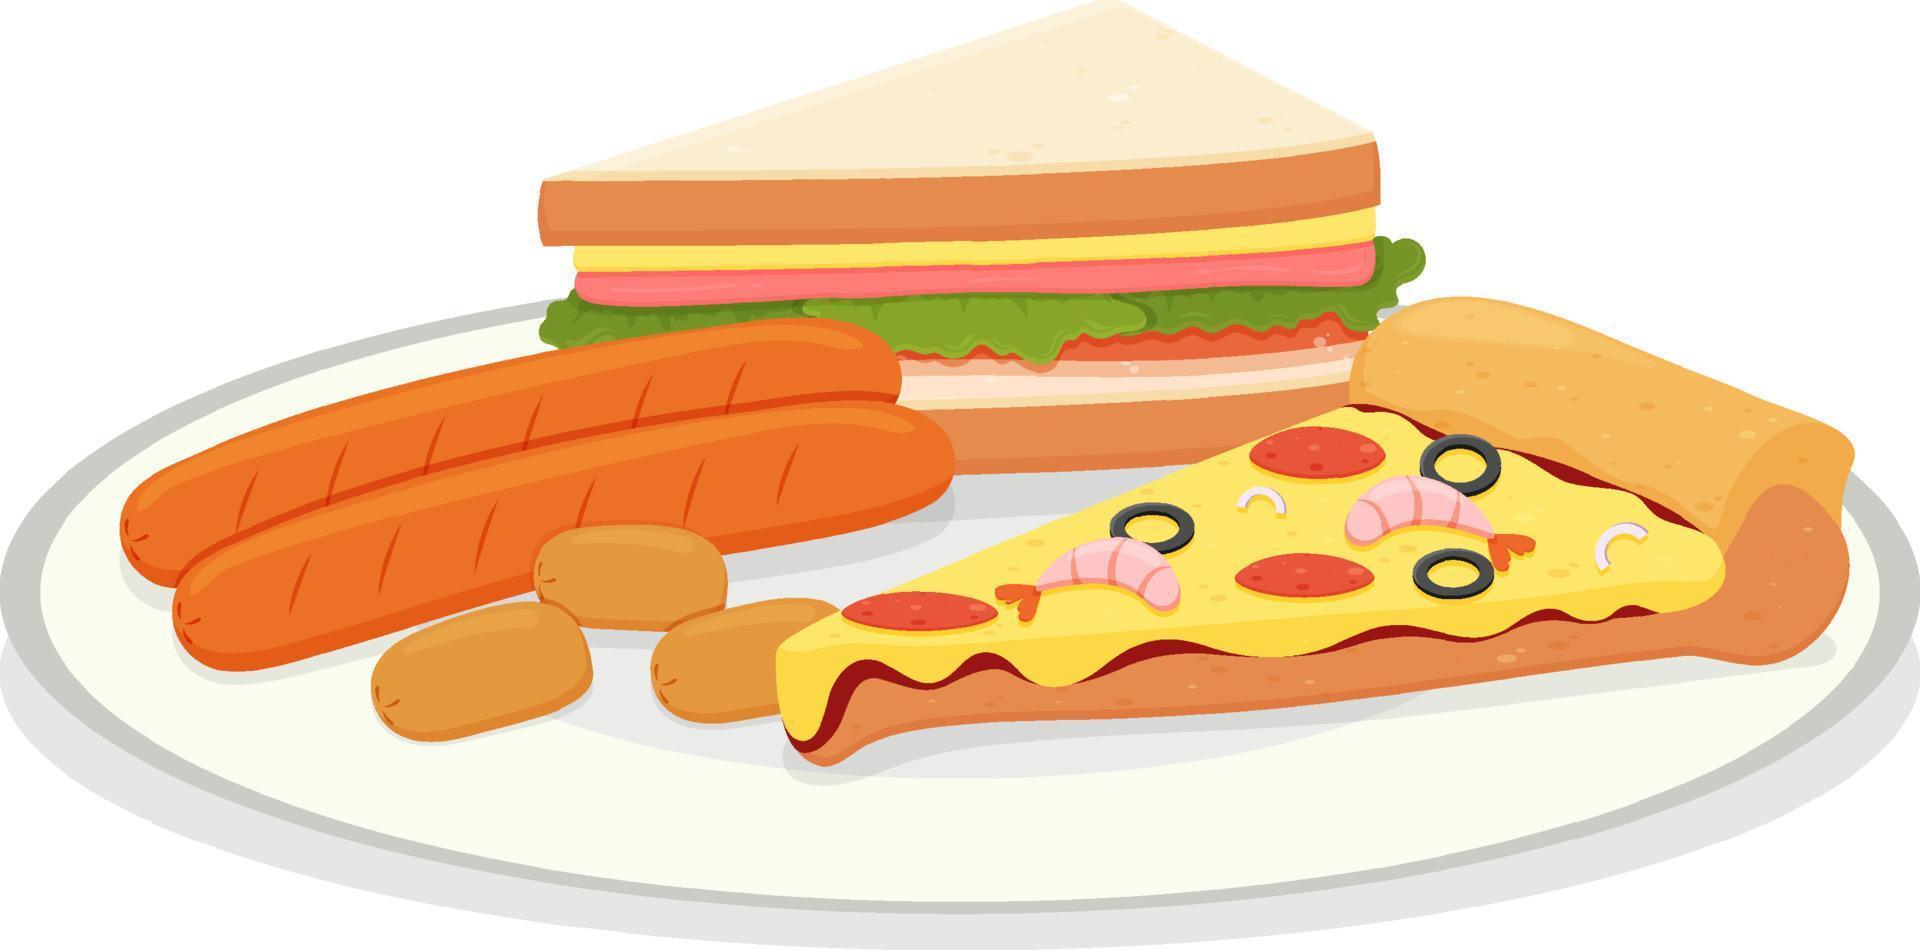 fastfood in cartoonstijl vector